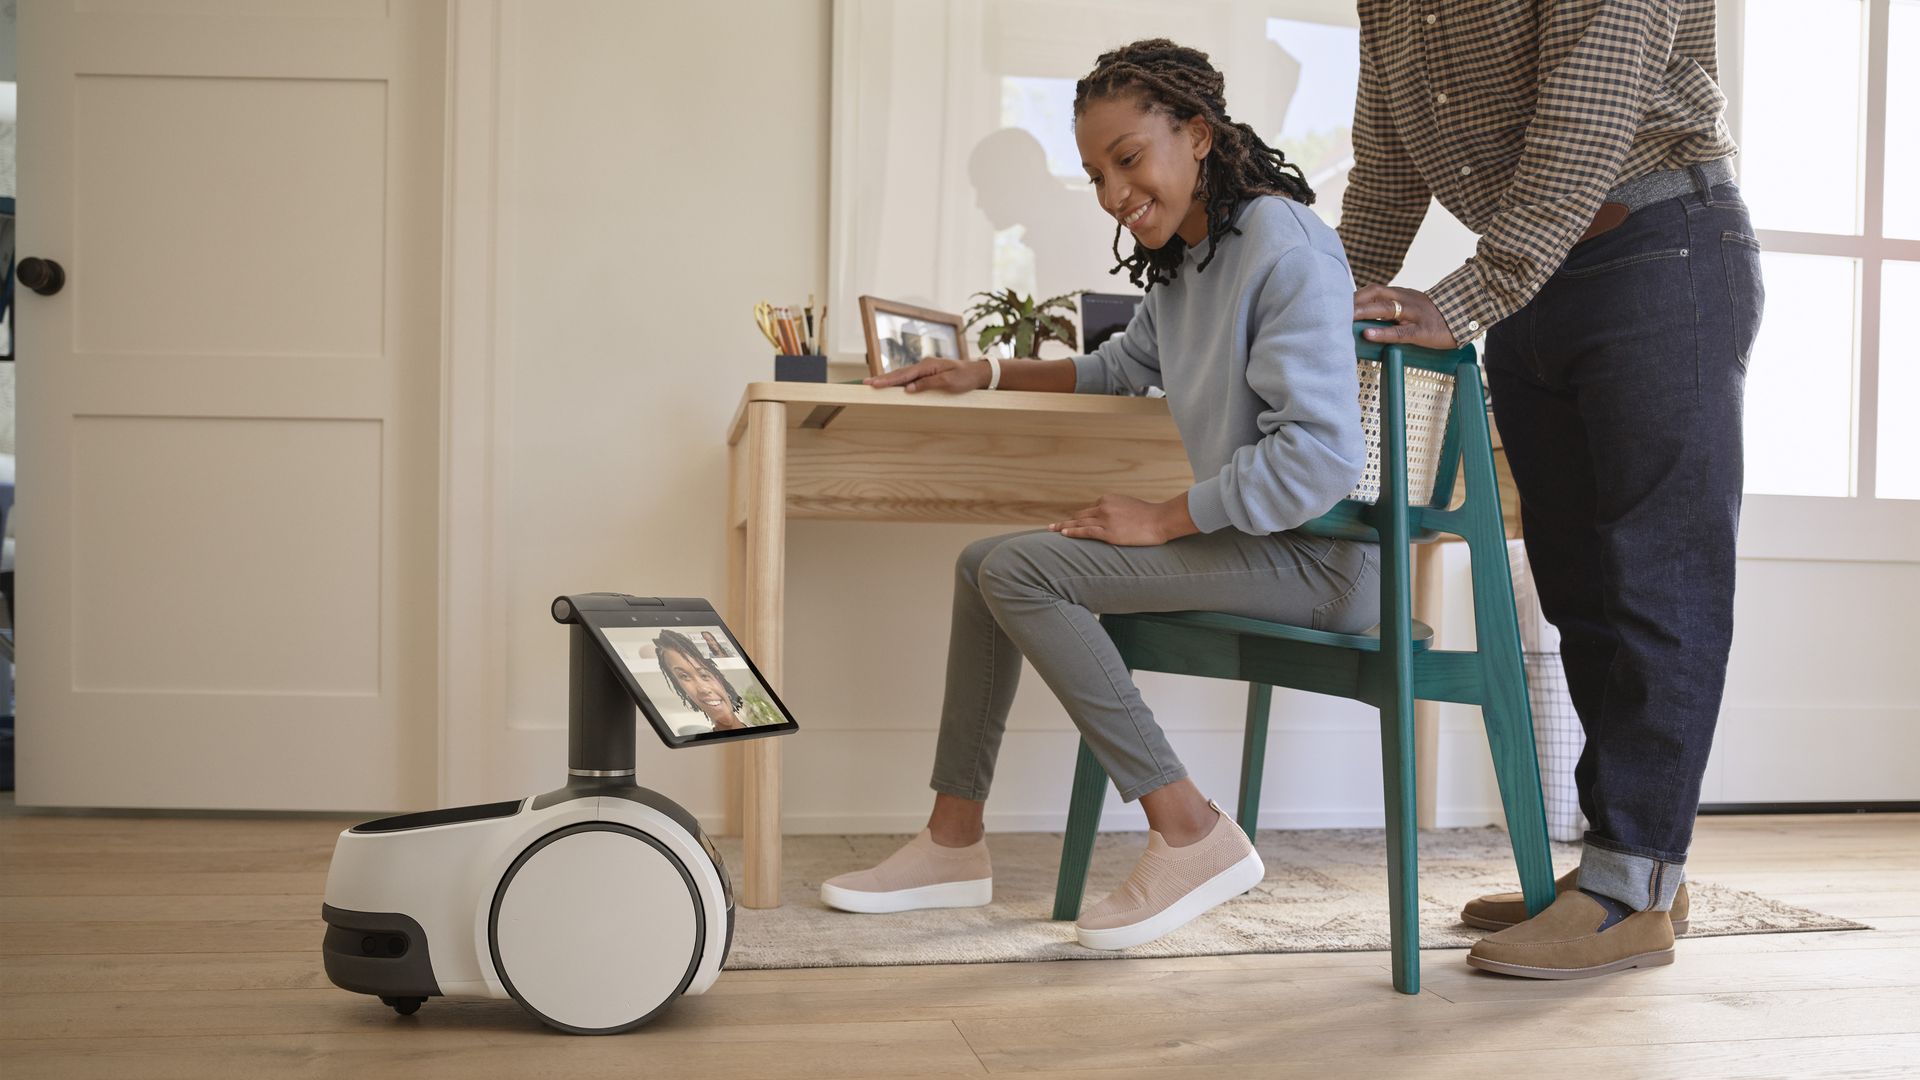 Amazon's Astro home robot.